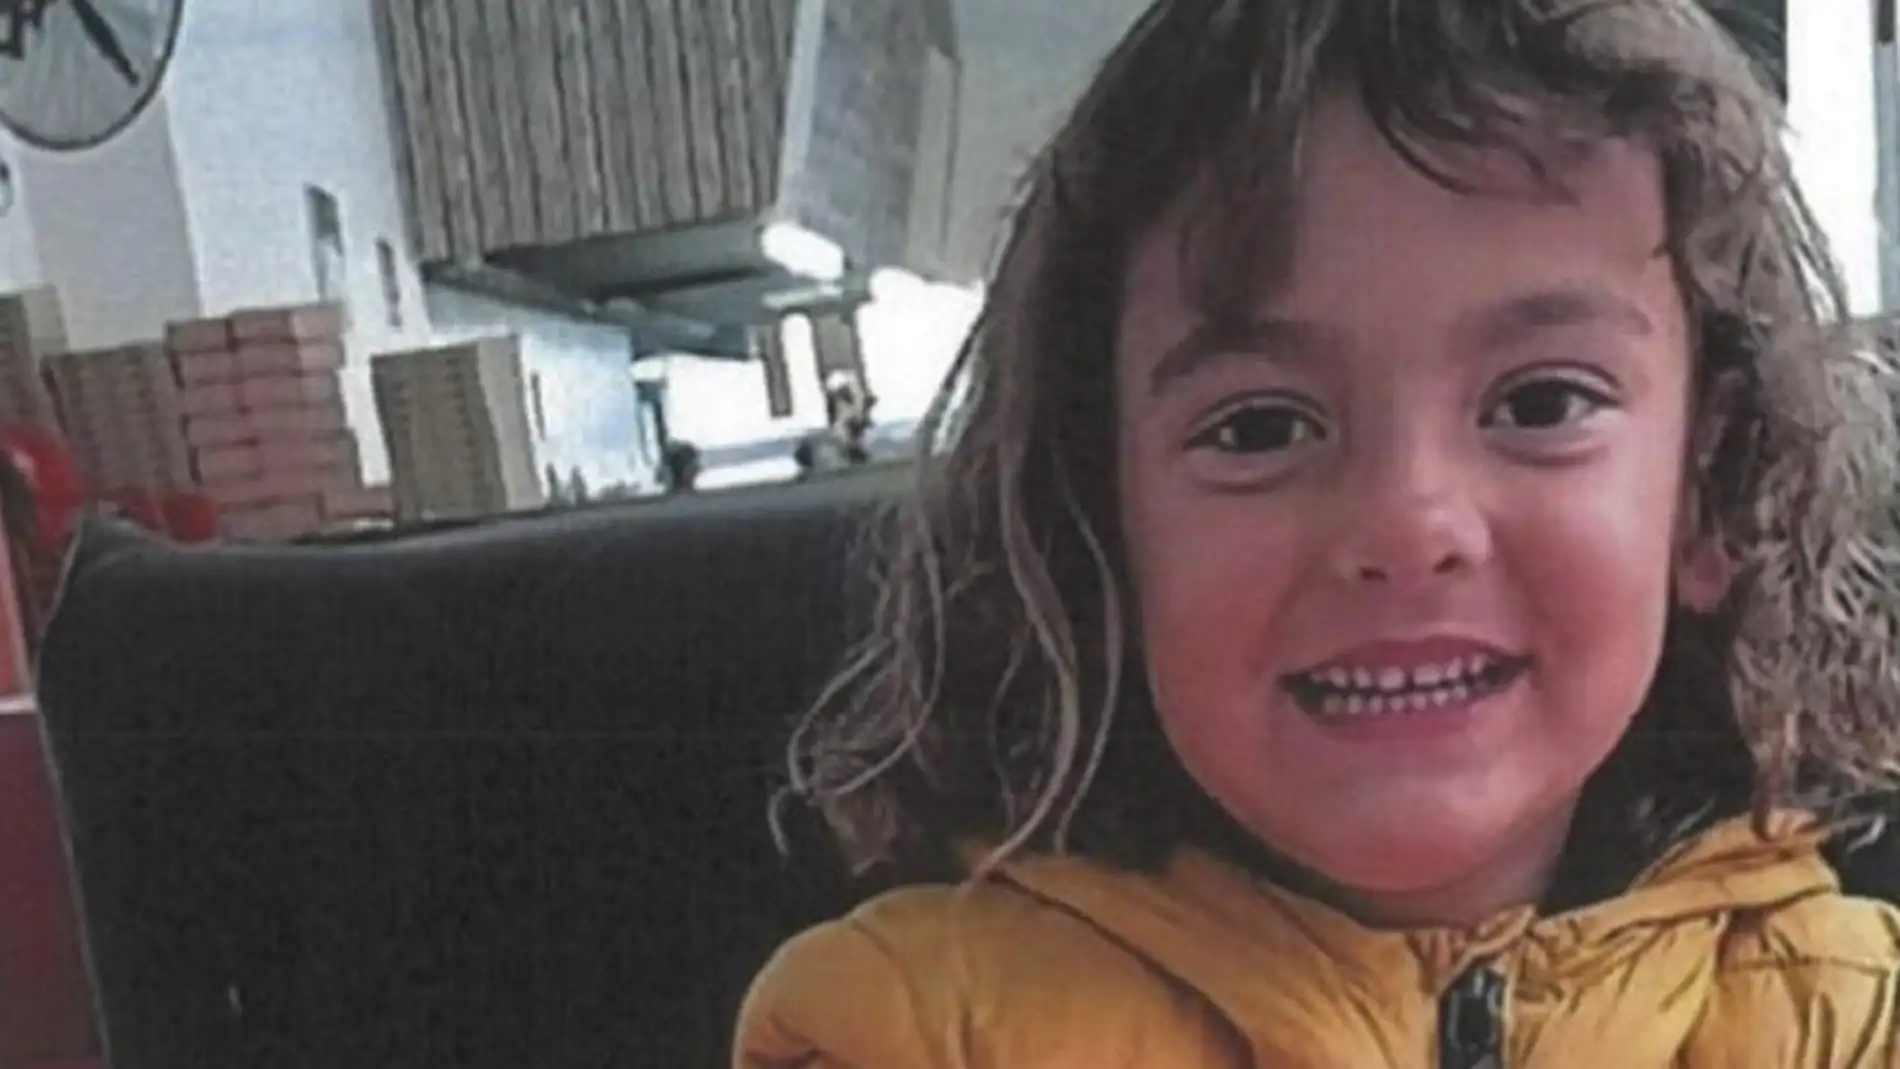 Buscan a una niña de 6 años desaparecida en Cullera desde el 18 de enero